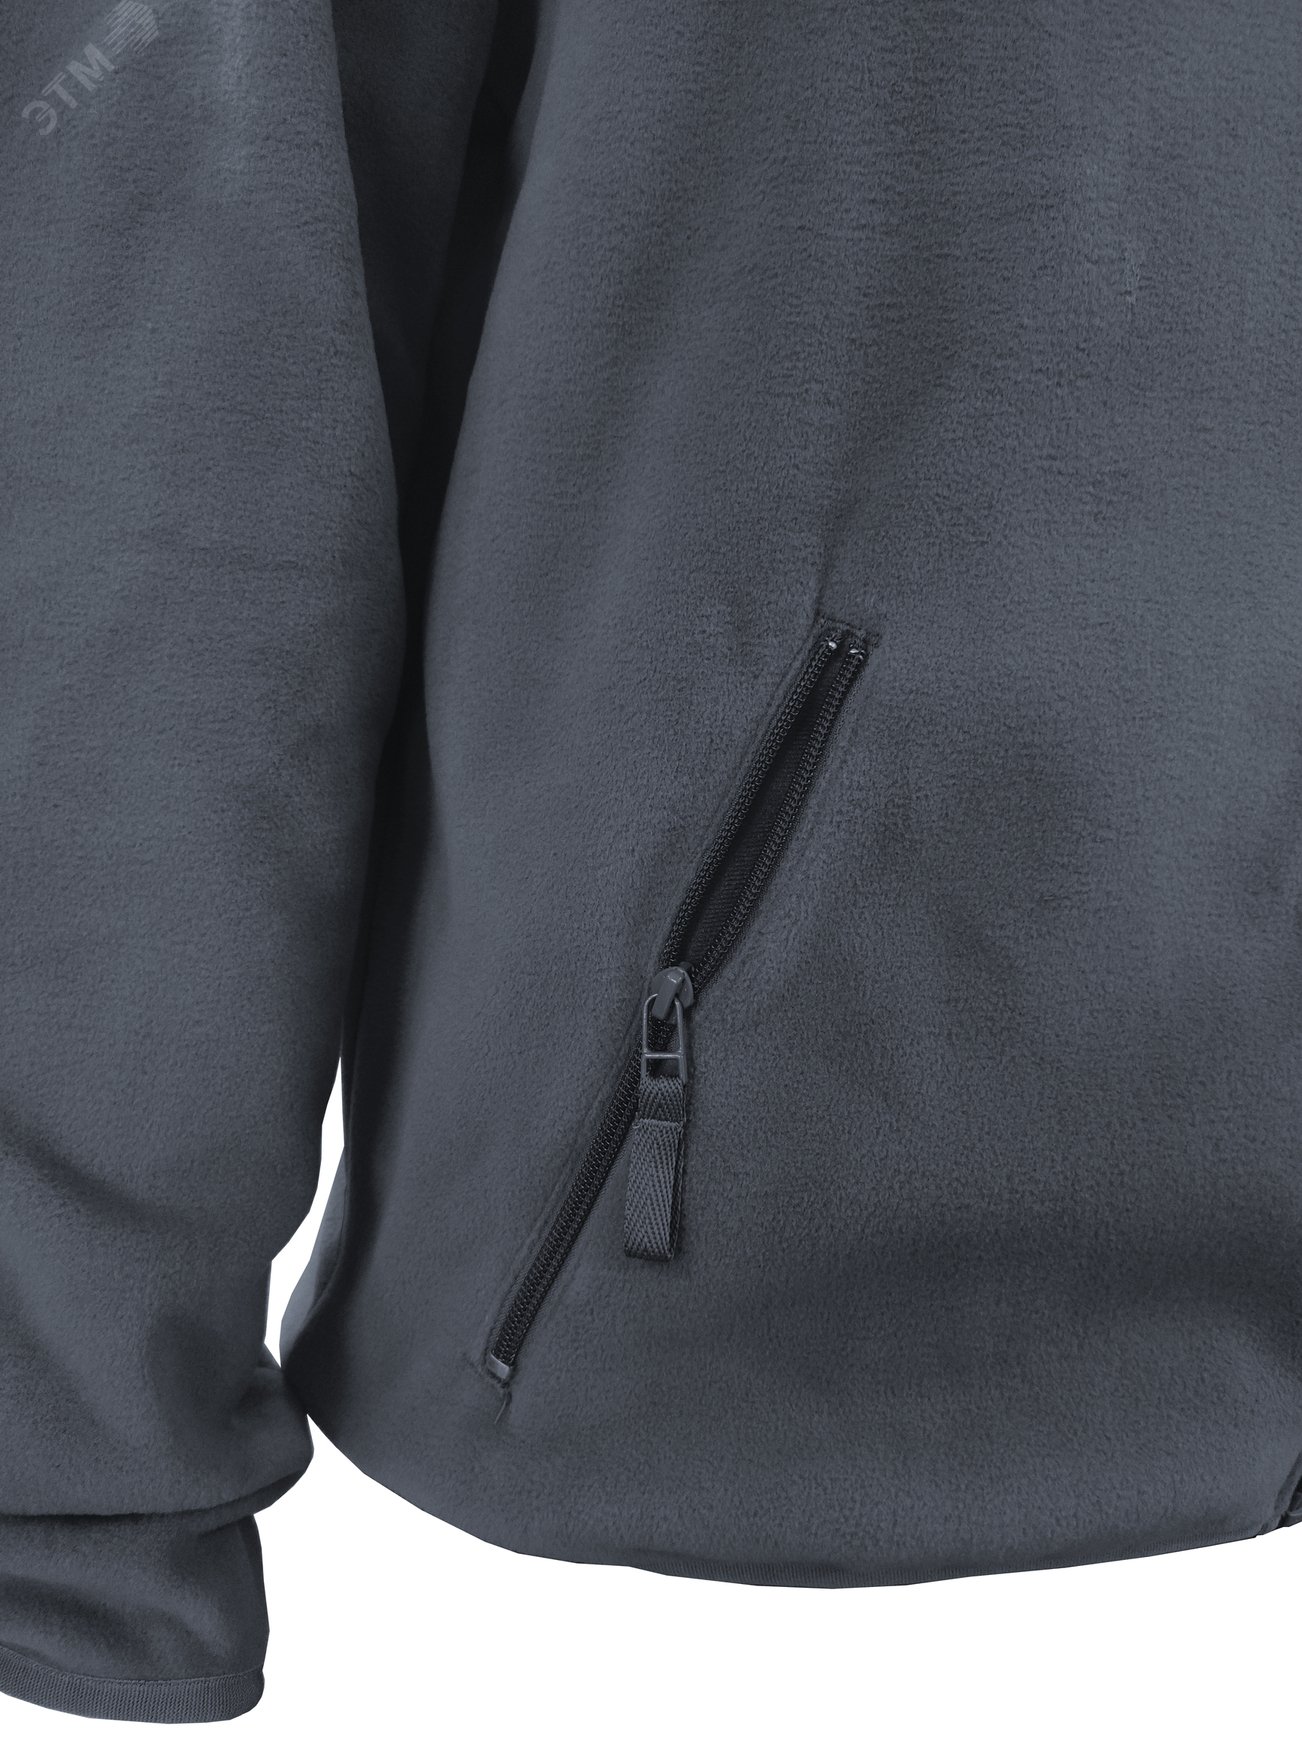 Куртка флисовая арт. JF-01 на молнии цв. серый 48-50 р. M 142302 Эталон-Спецодежда - превью 8